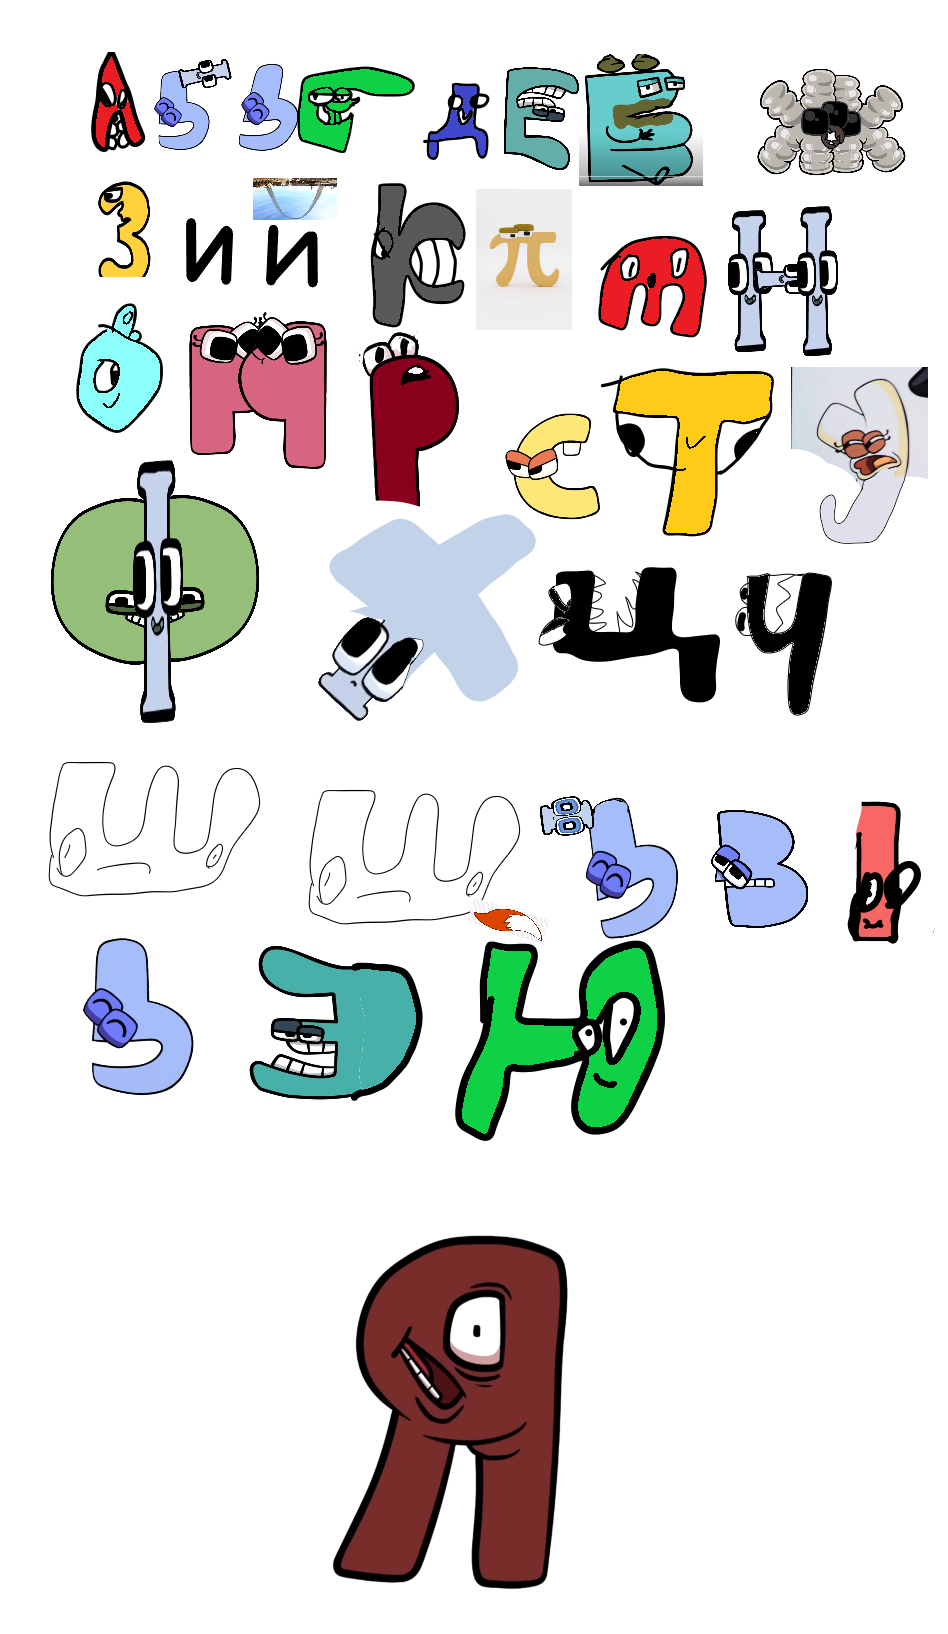 russian alphabet lore from ohio by TrevorHendersonFan8 on DeviantArt